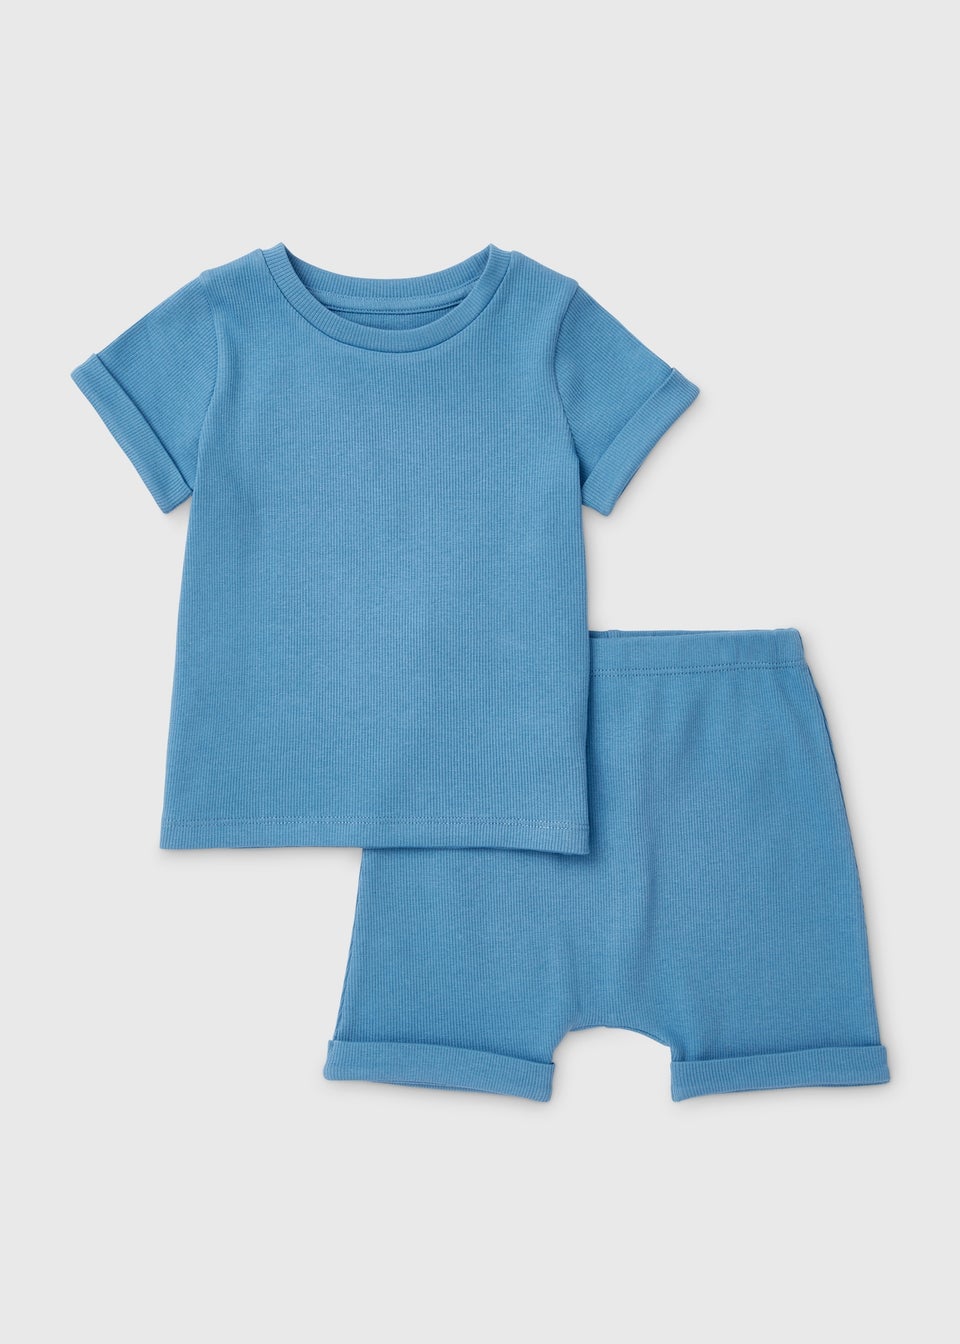 Baby Blue T-Shirt & Shorts Set (Newborn-23mths)